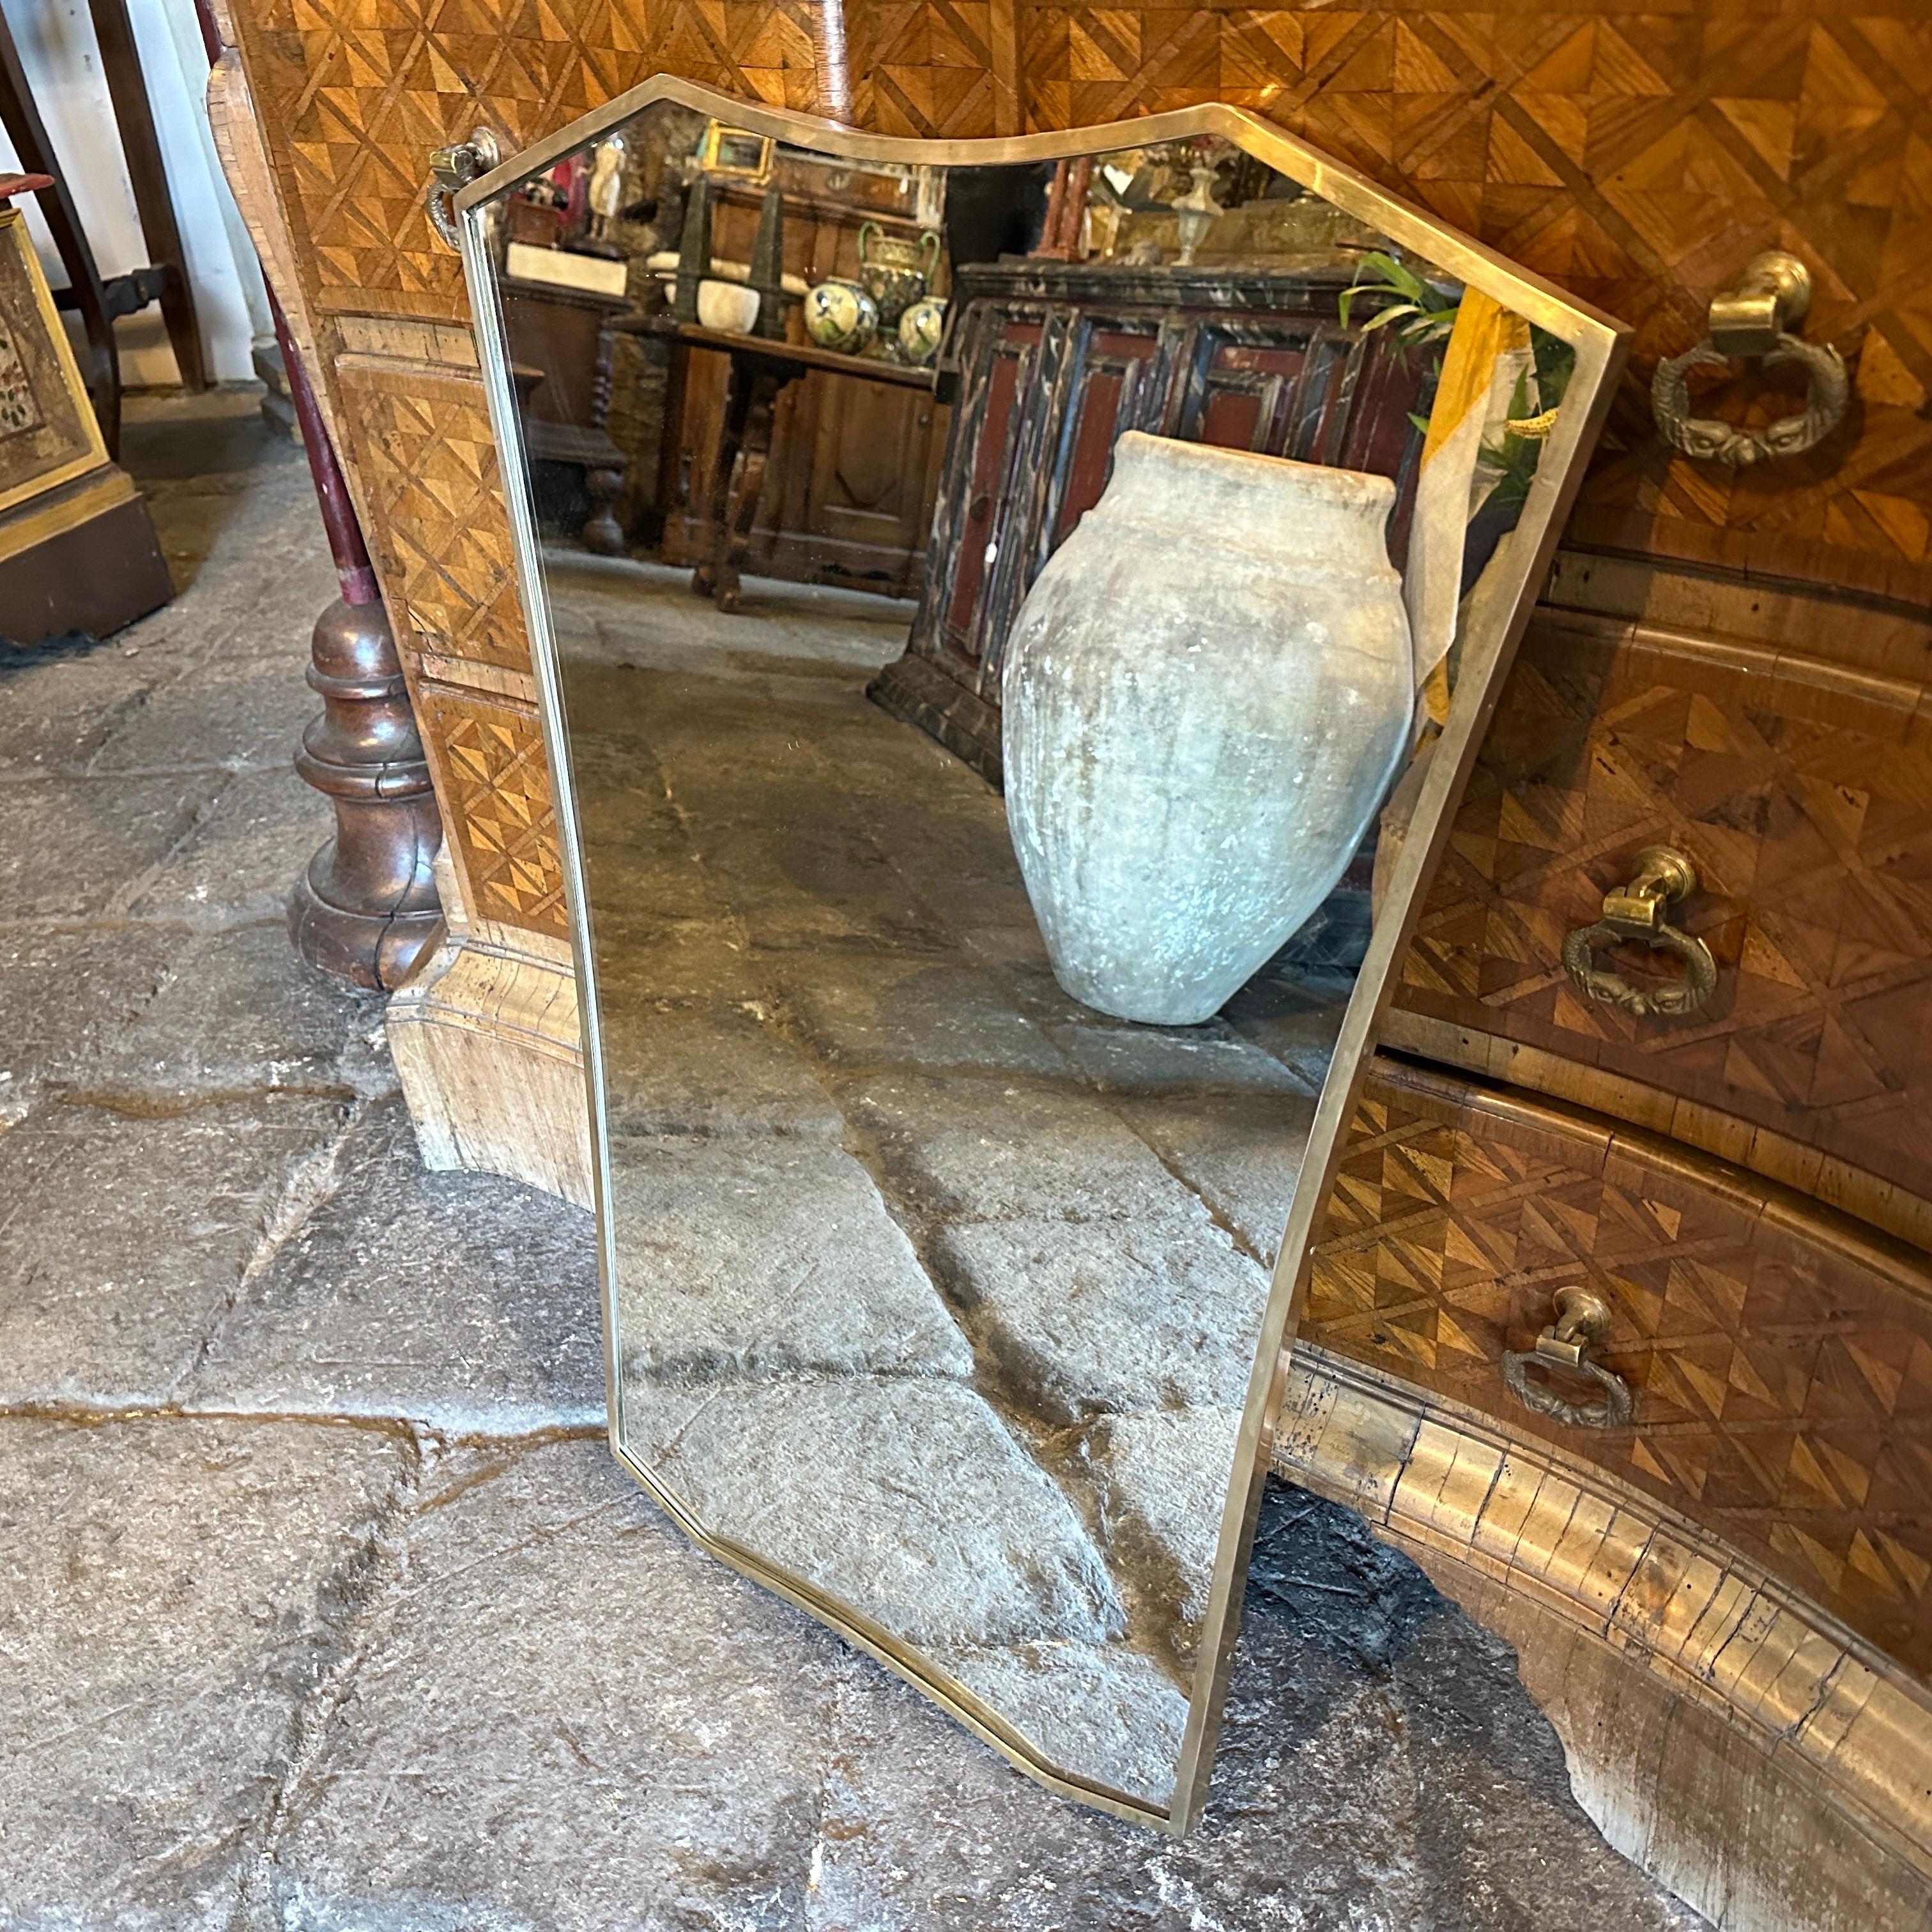 Un étonnant miroir mural en laiton massif, bien formé, de style moderne du milieu du siècle dernier, fabriqué à la main en Italie dans les années 50 à la manière de Gio Ponti, qui utilisait ces miroirs muraux pour meubler les maisons les plus